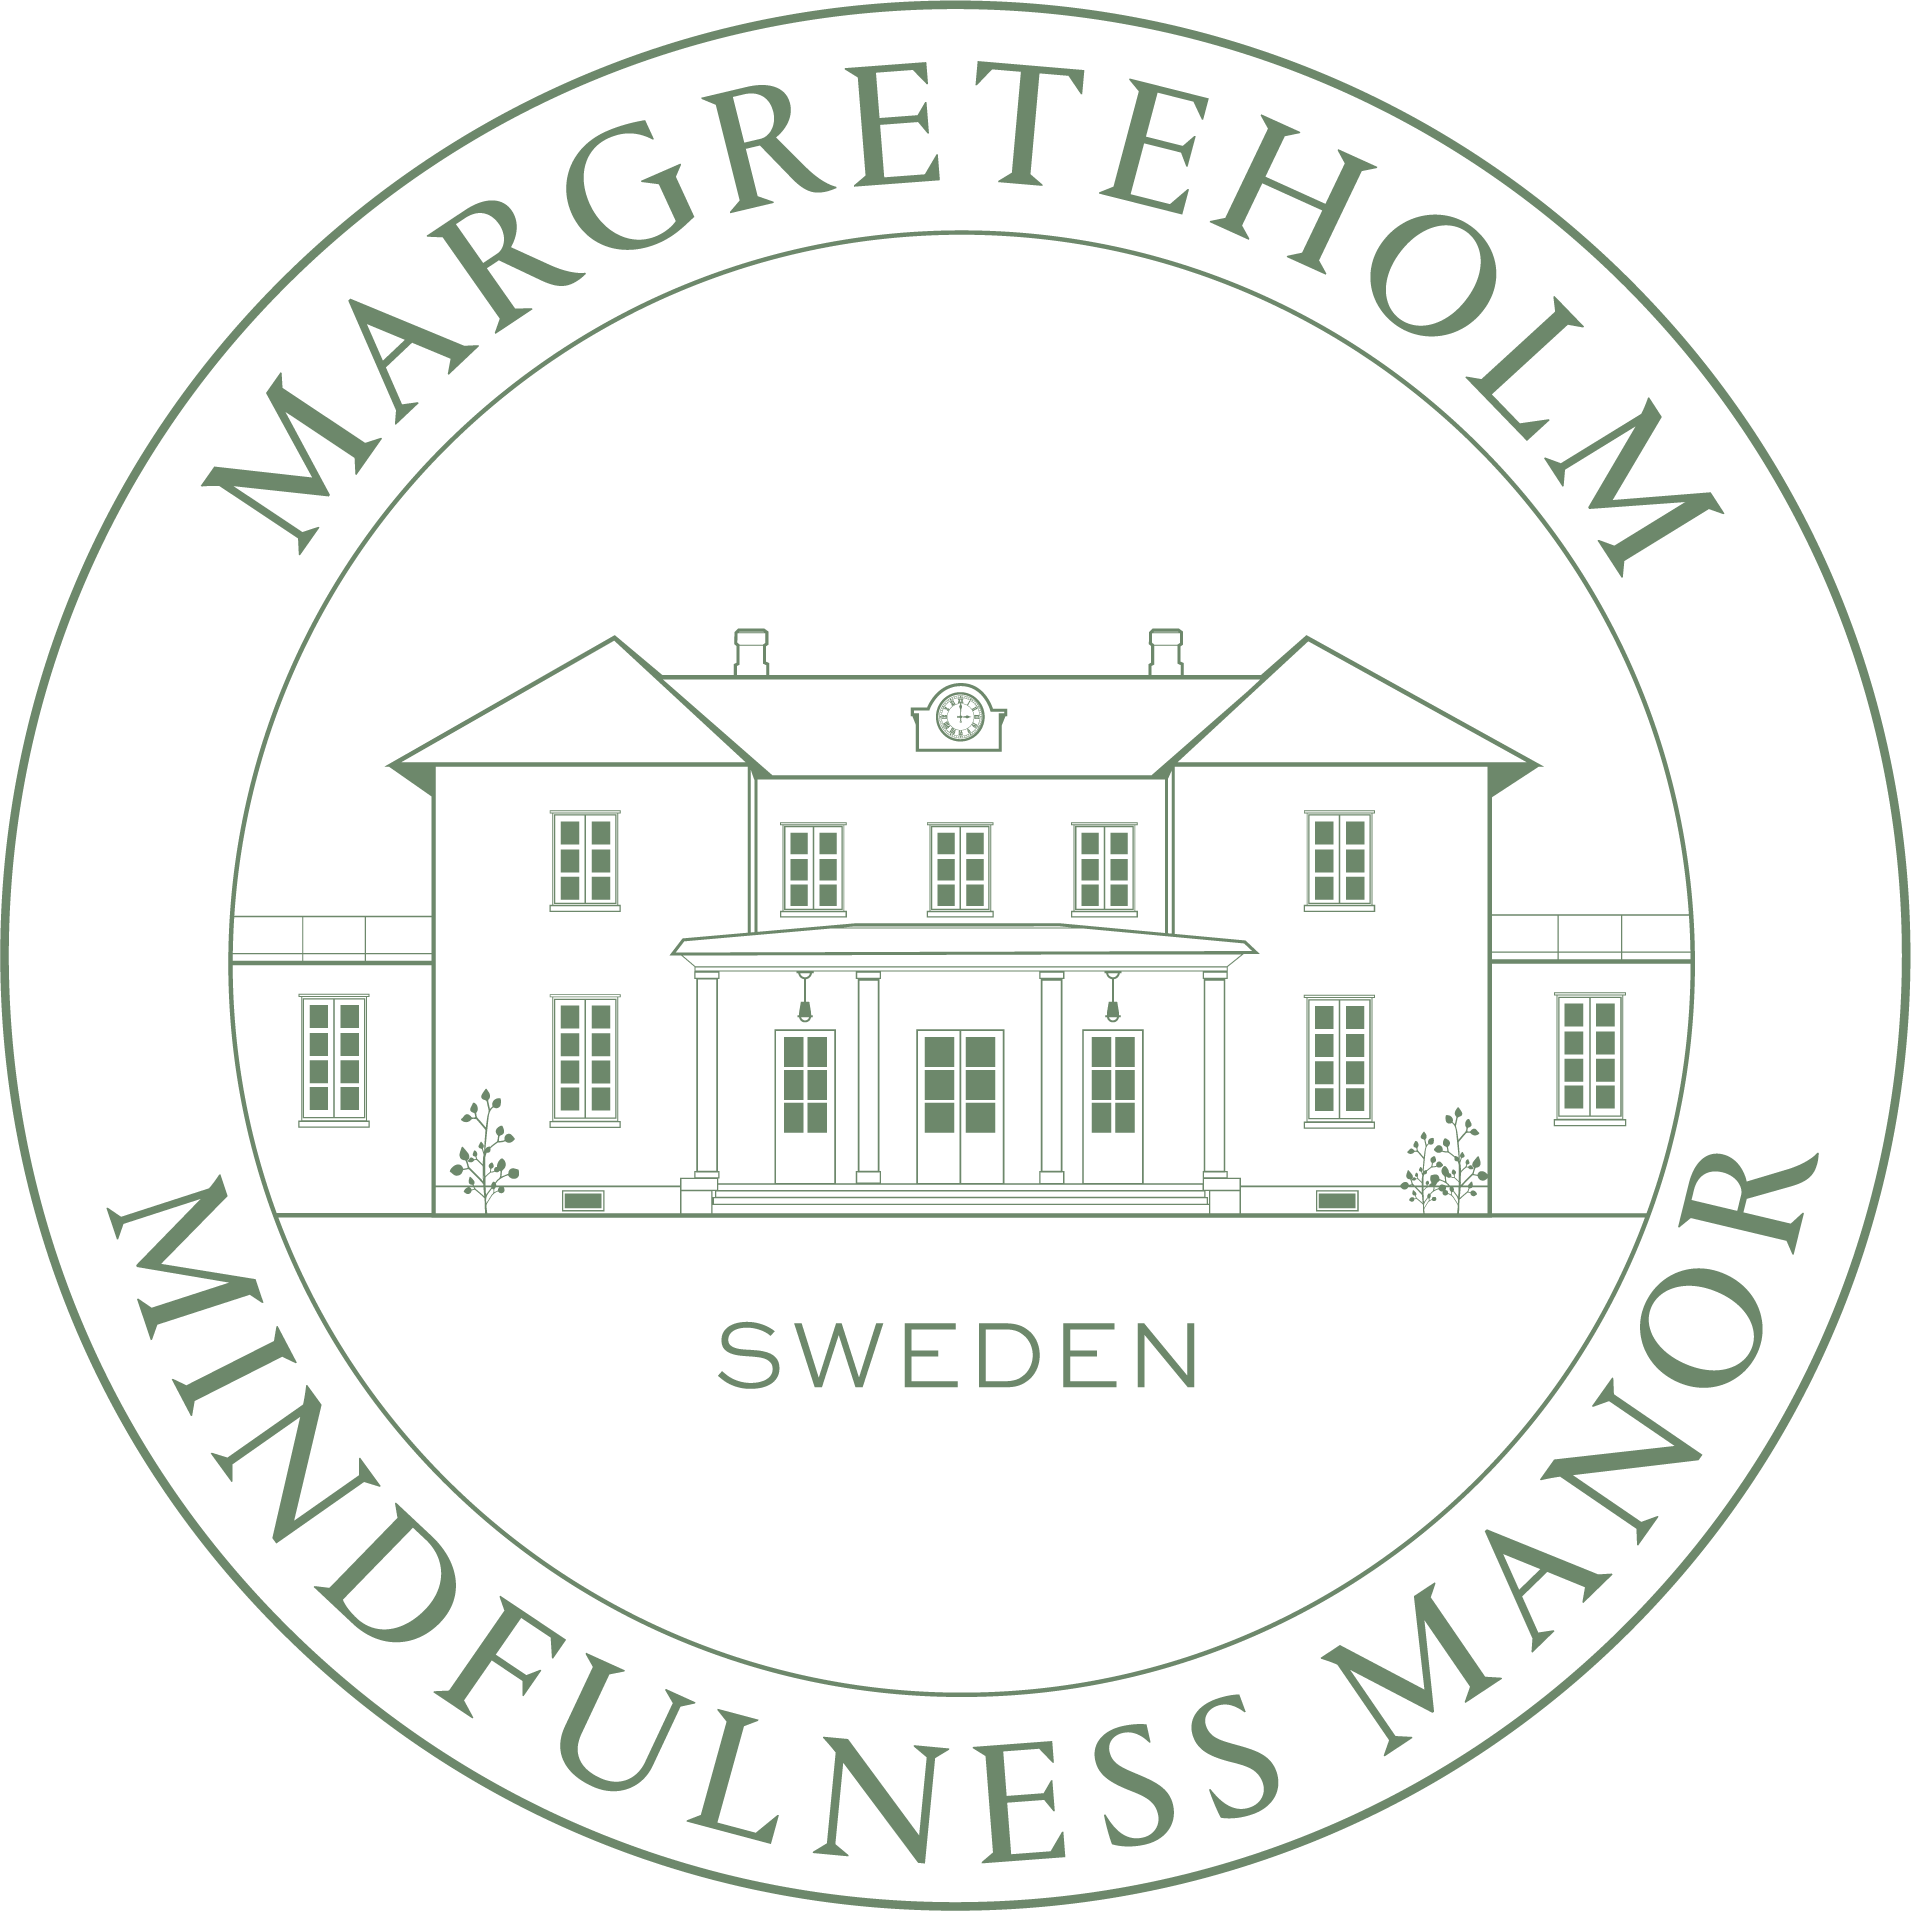 Margreteholm Mindfulness Manor